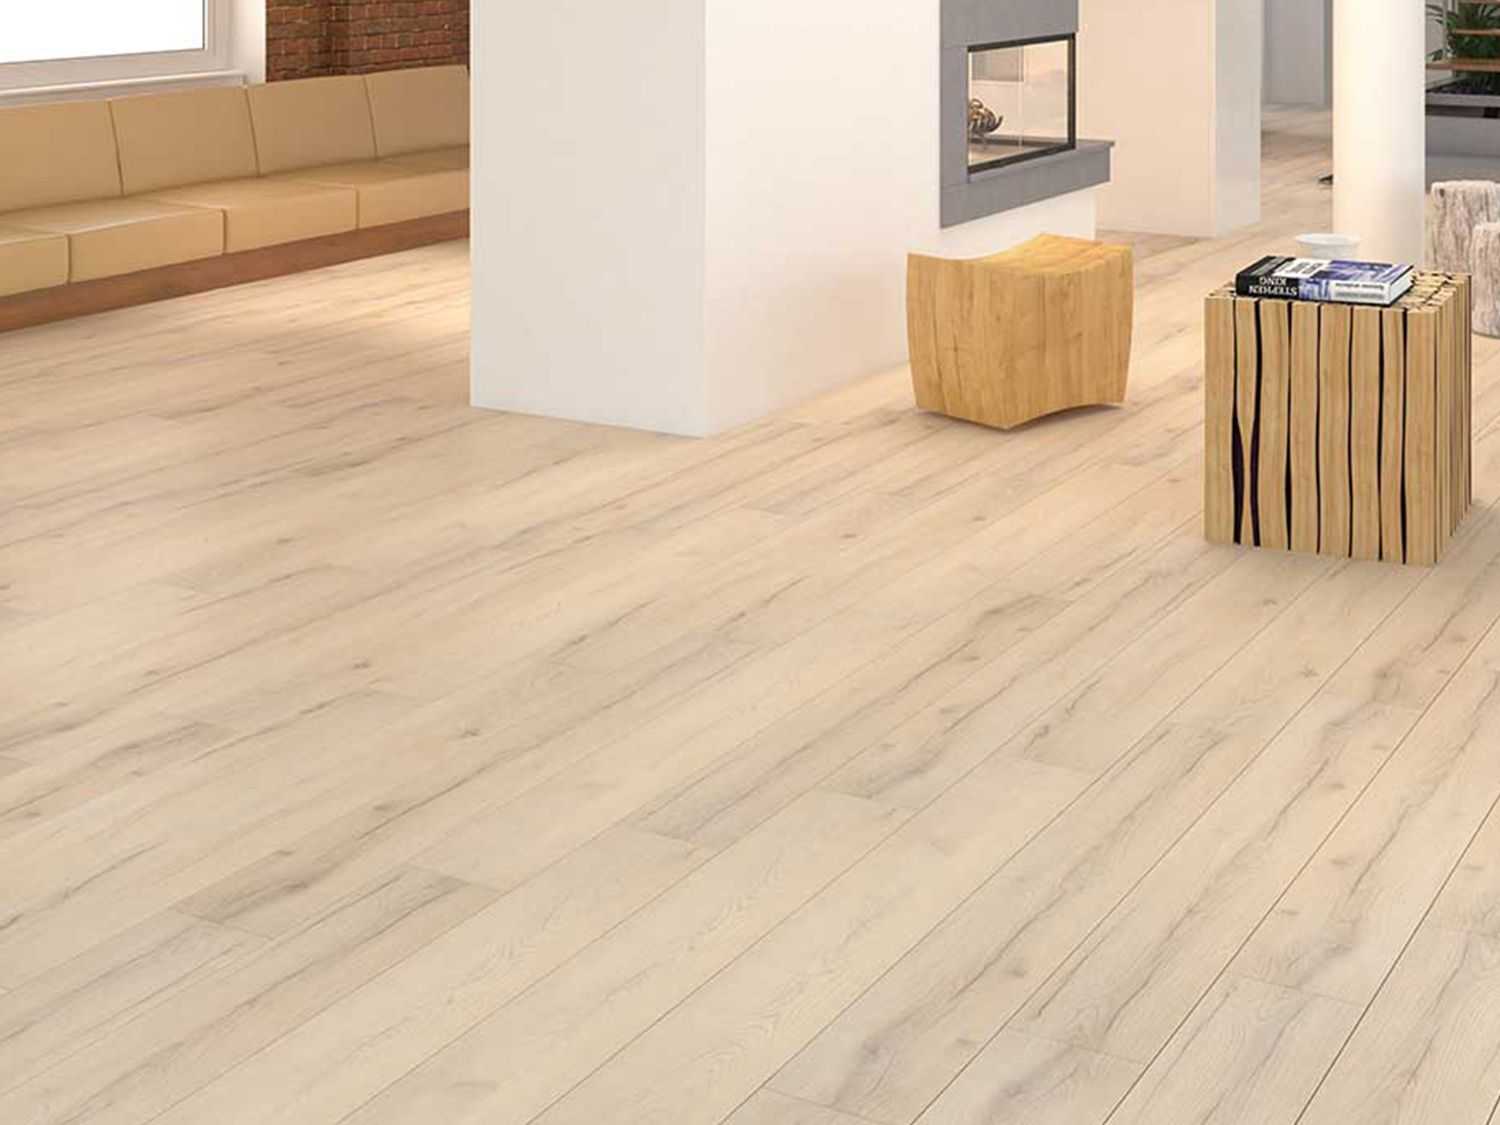 Sàn gỗ Kronohome là loại sản phẩm sàn gỗ Malasia cao cấp áp dụng công nghệ hàng đầu thế giới